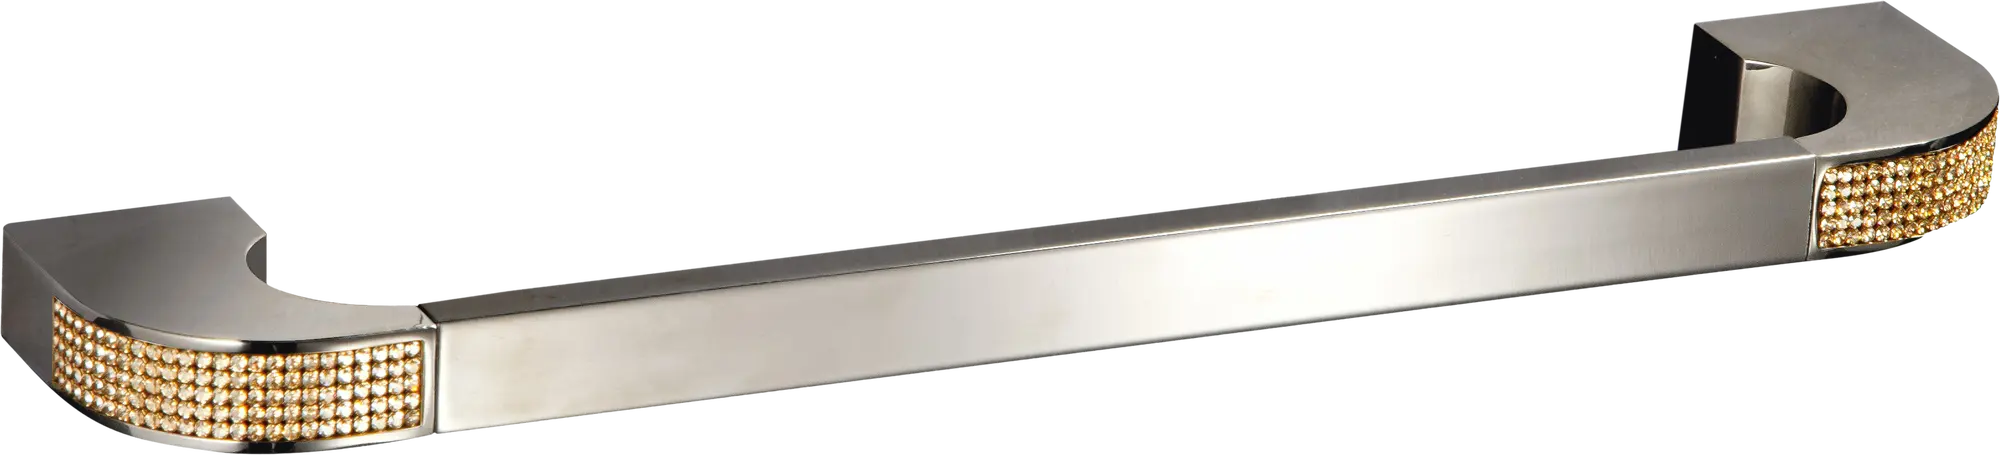 Toallero carmen plata brillante 62x2.5 cm